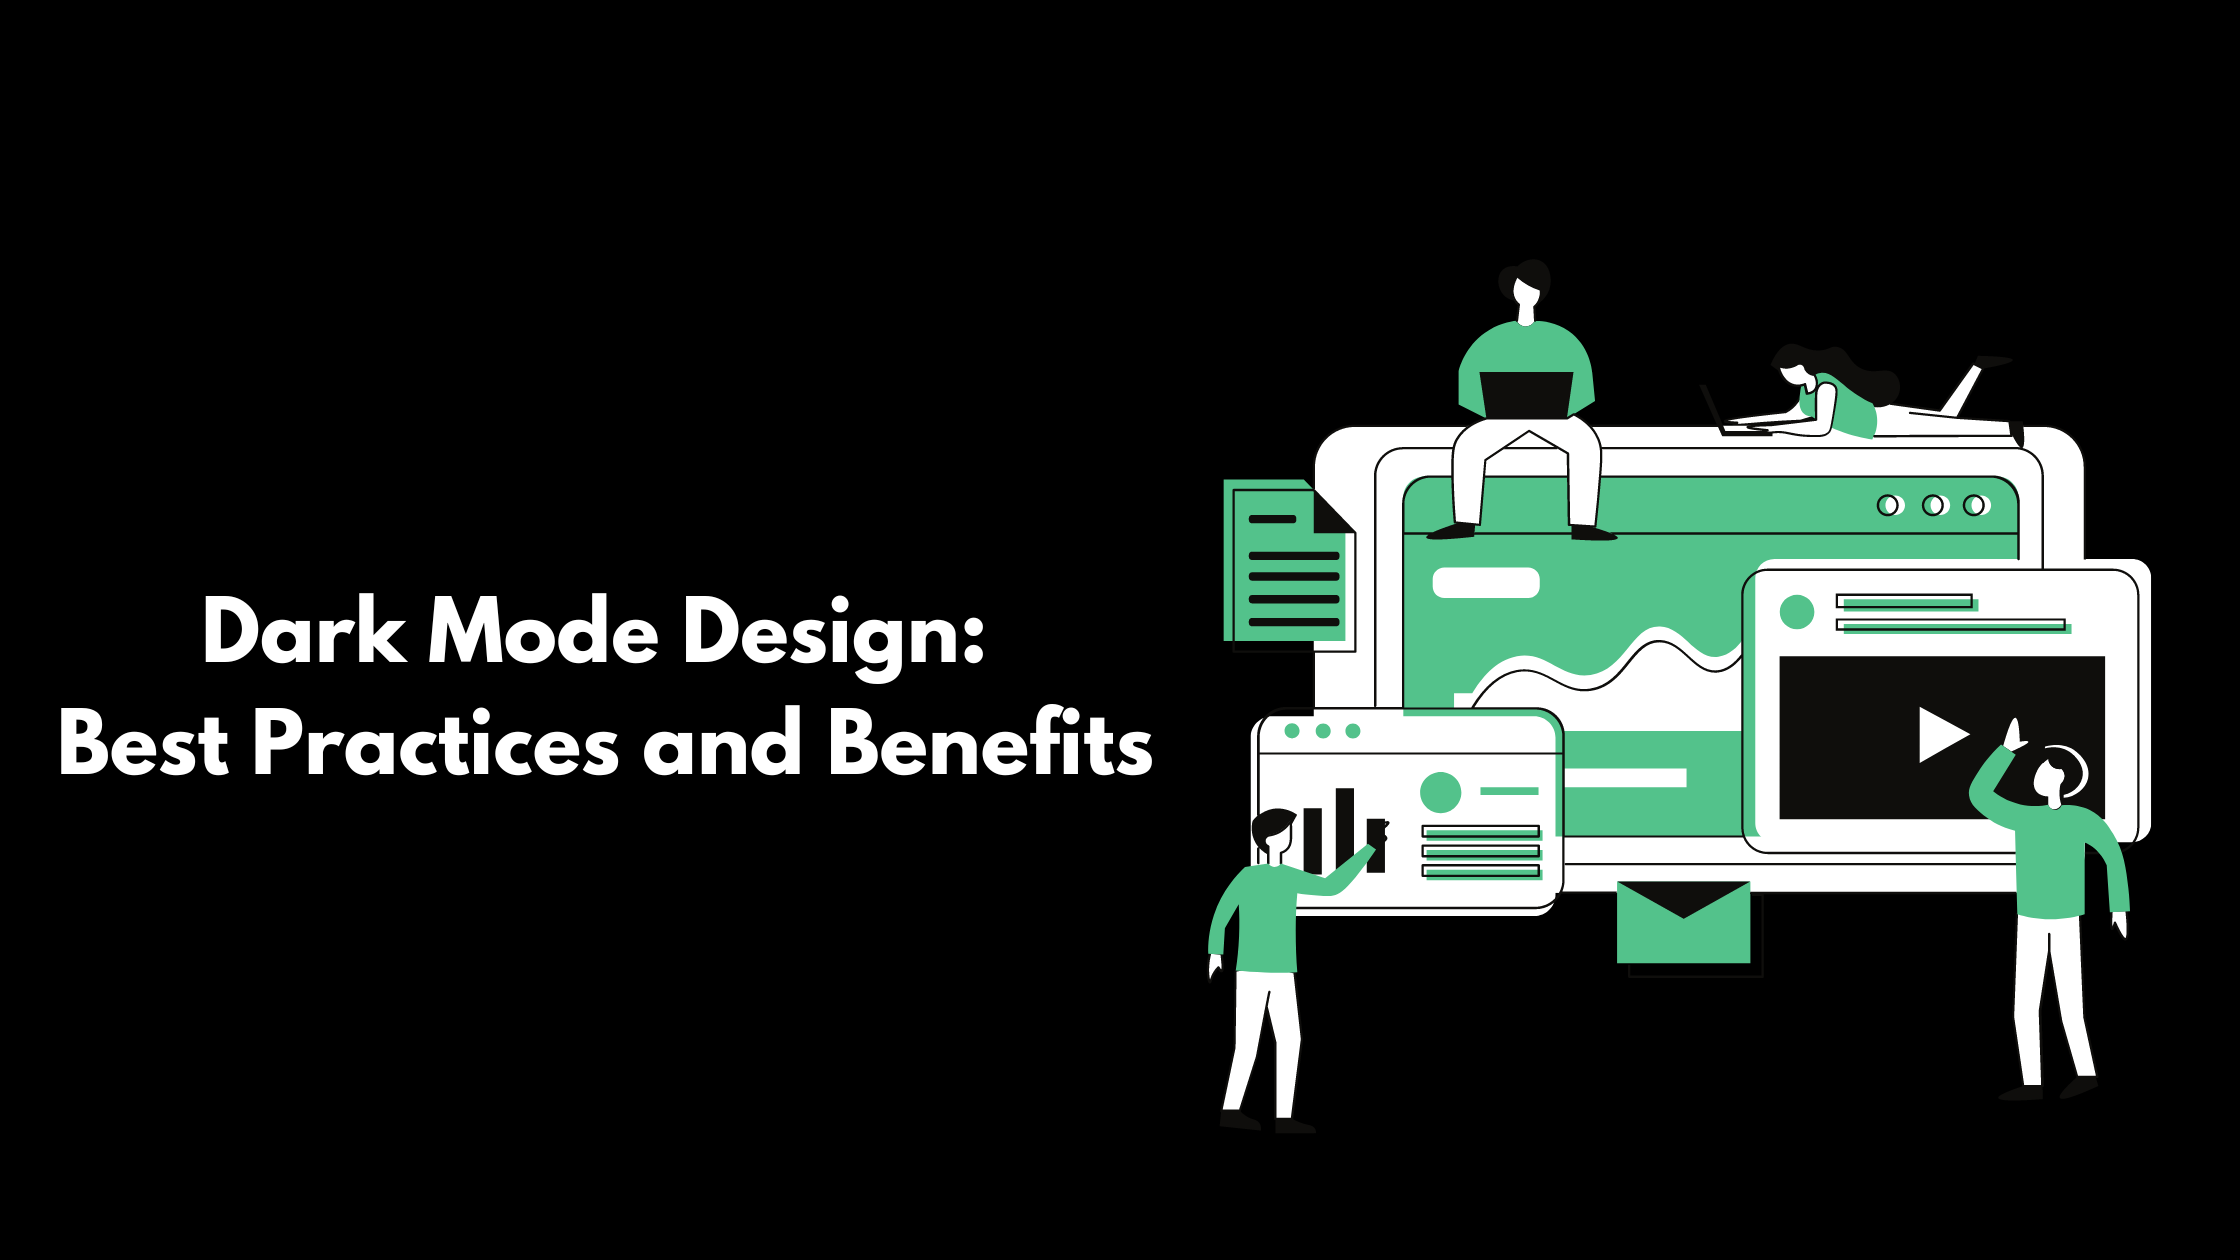 Dark Mode Design: Best Practices and Benefits